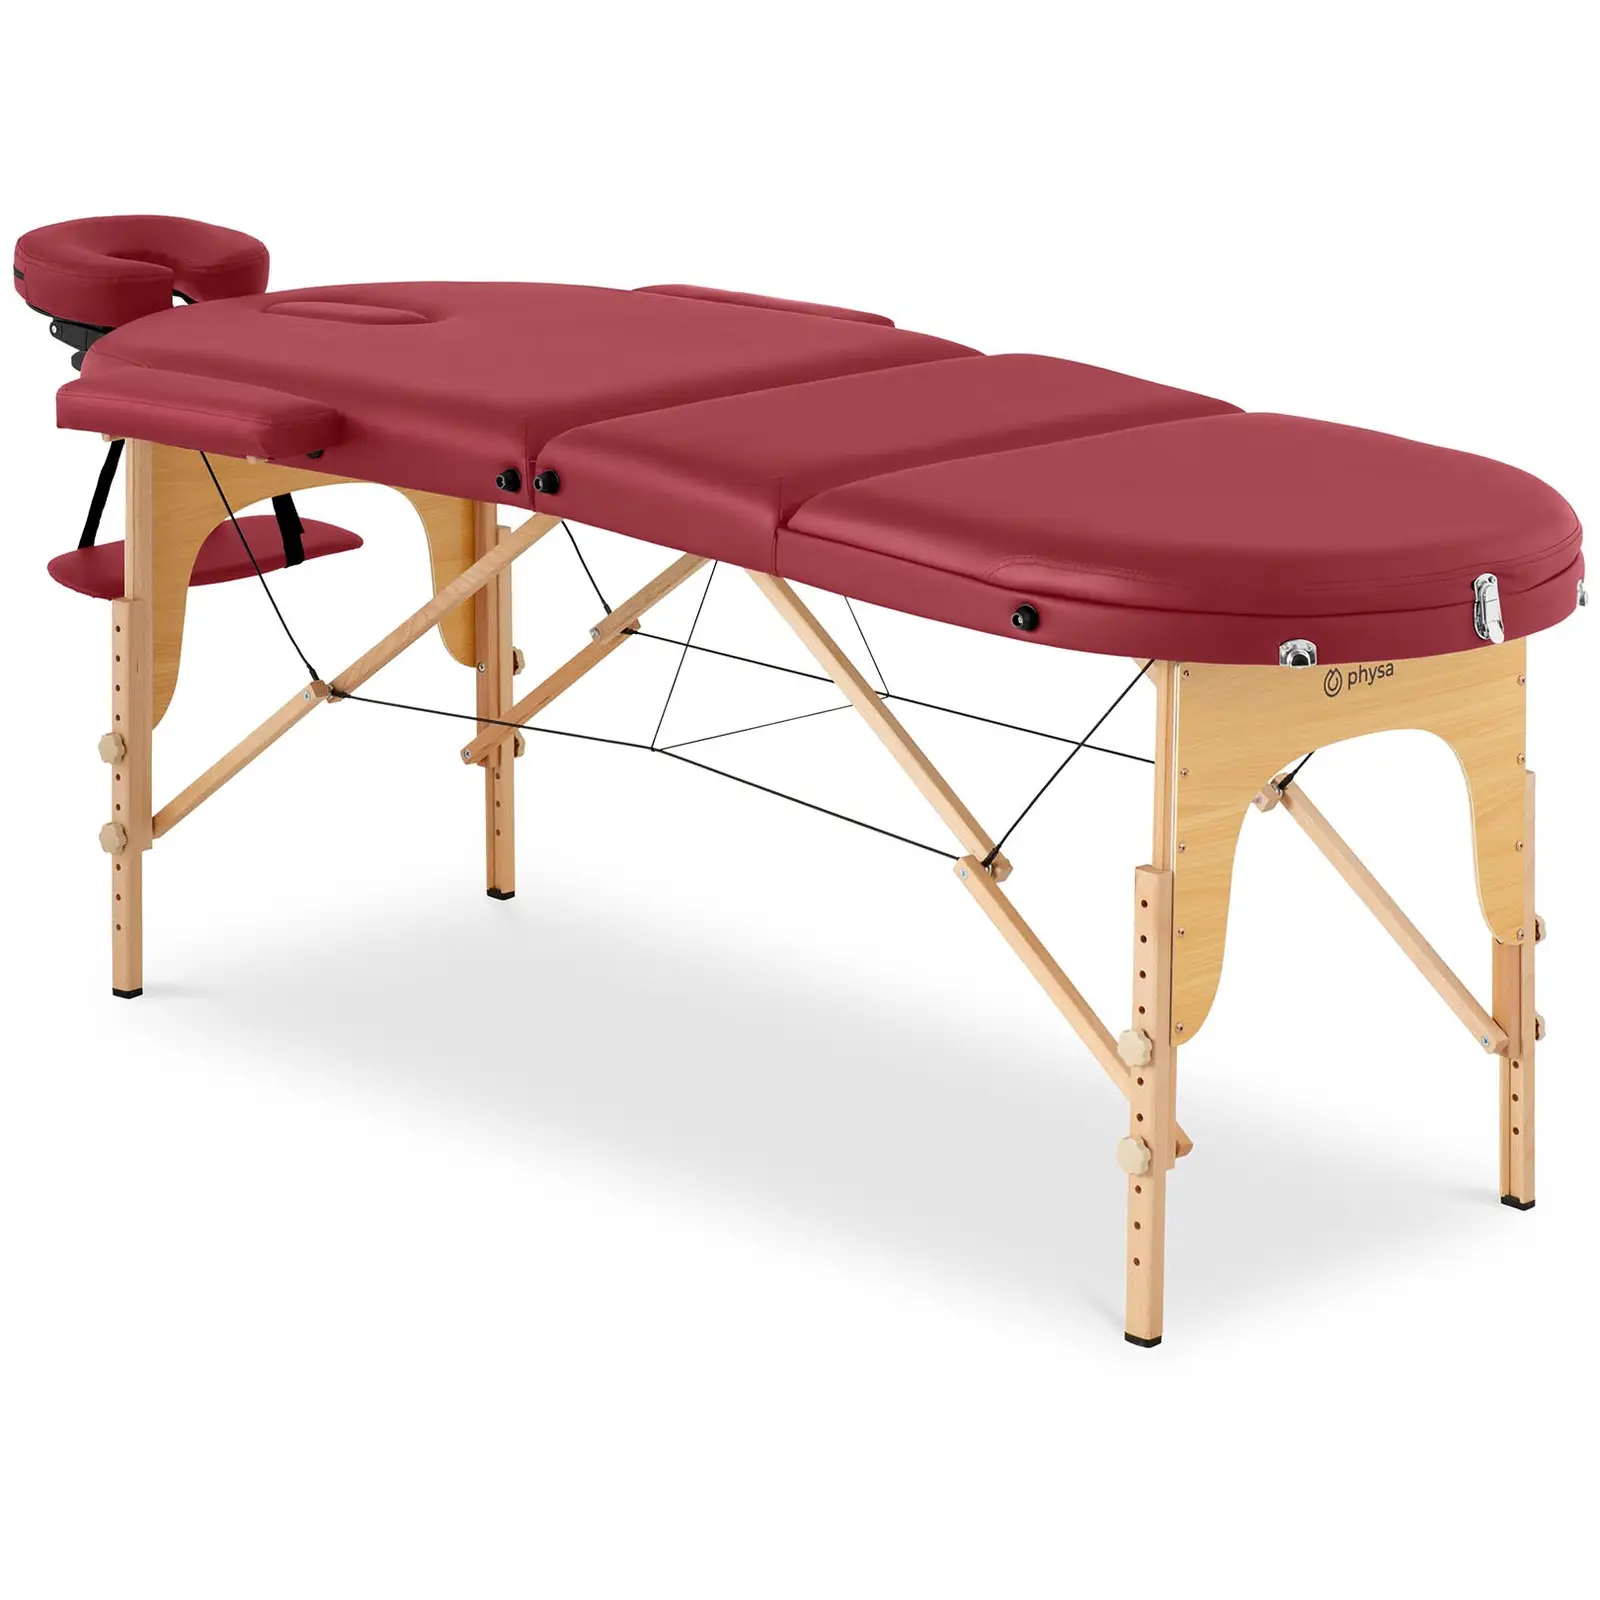 Składany stół do masażu - 185-211 x 70-88 x 63-85  cm - 227 kg - Czerwony